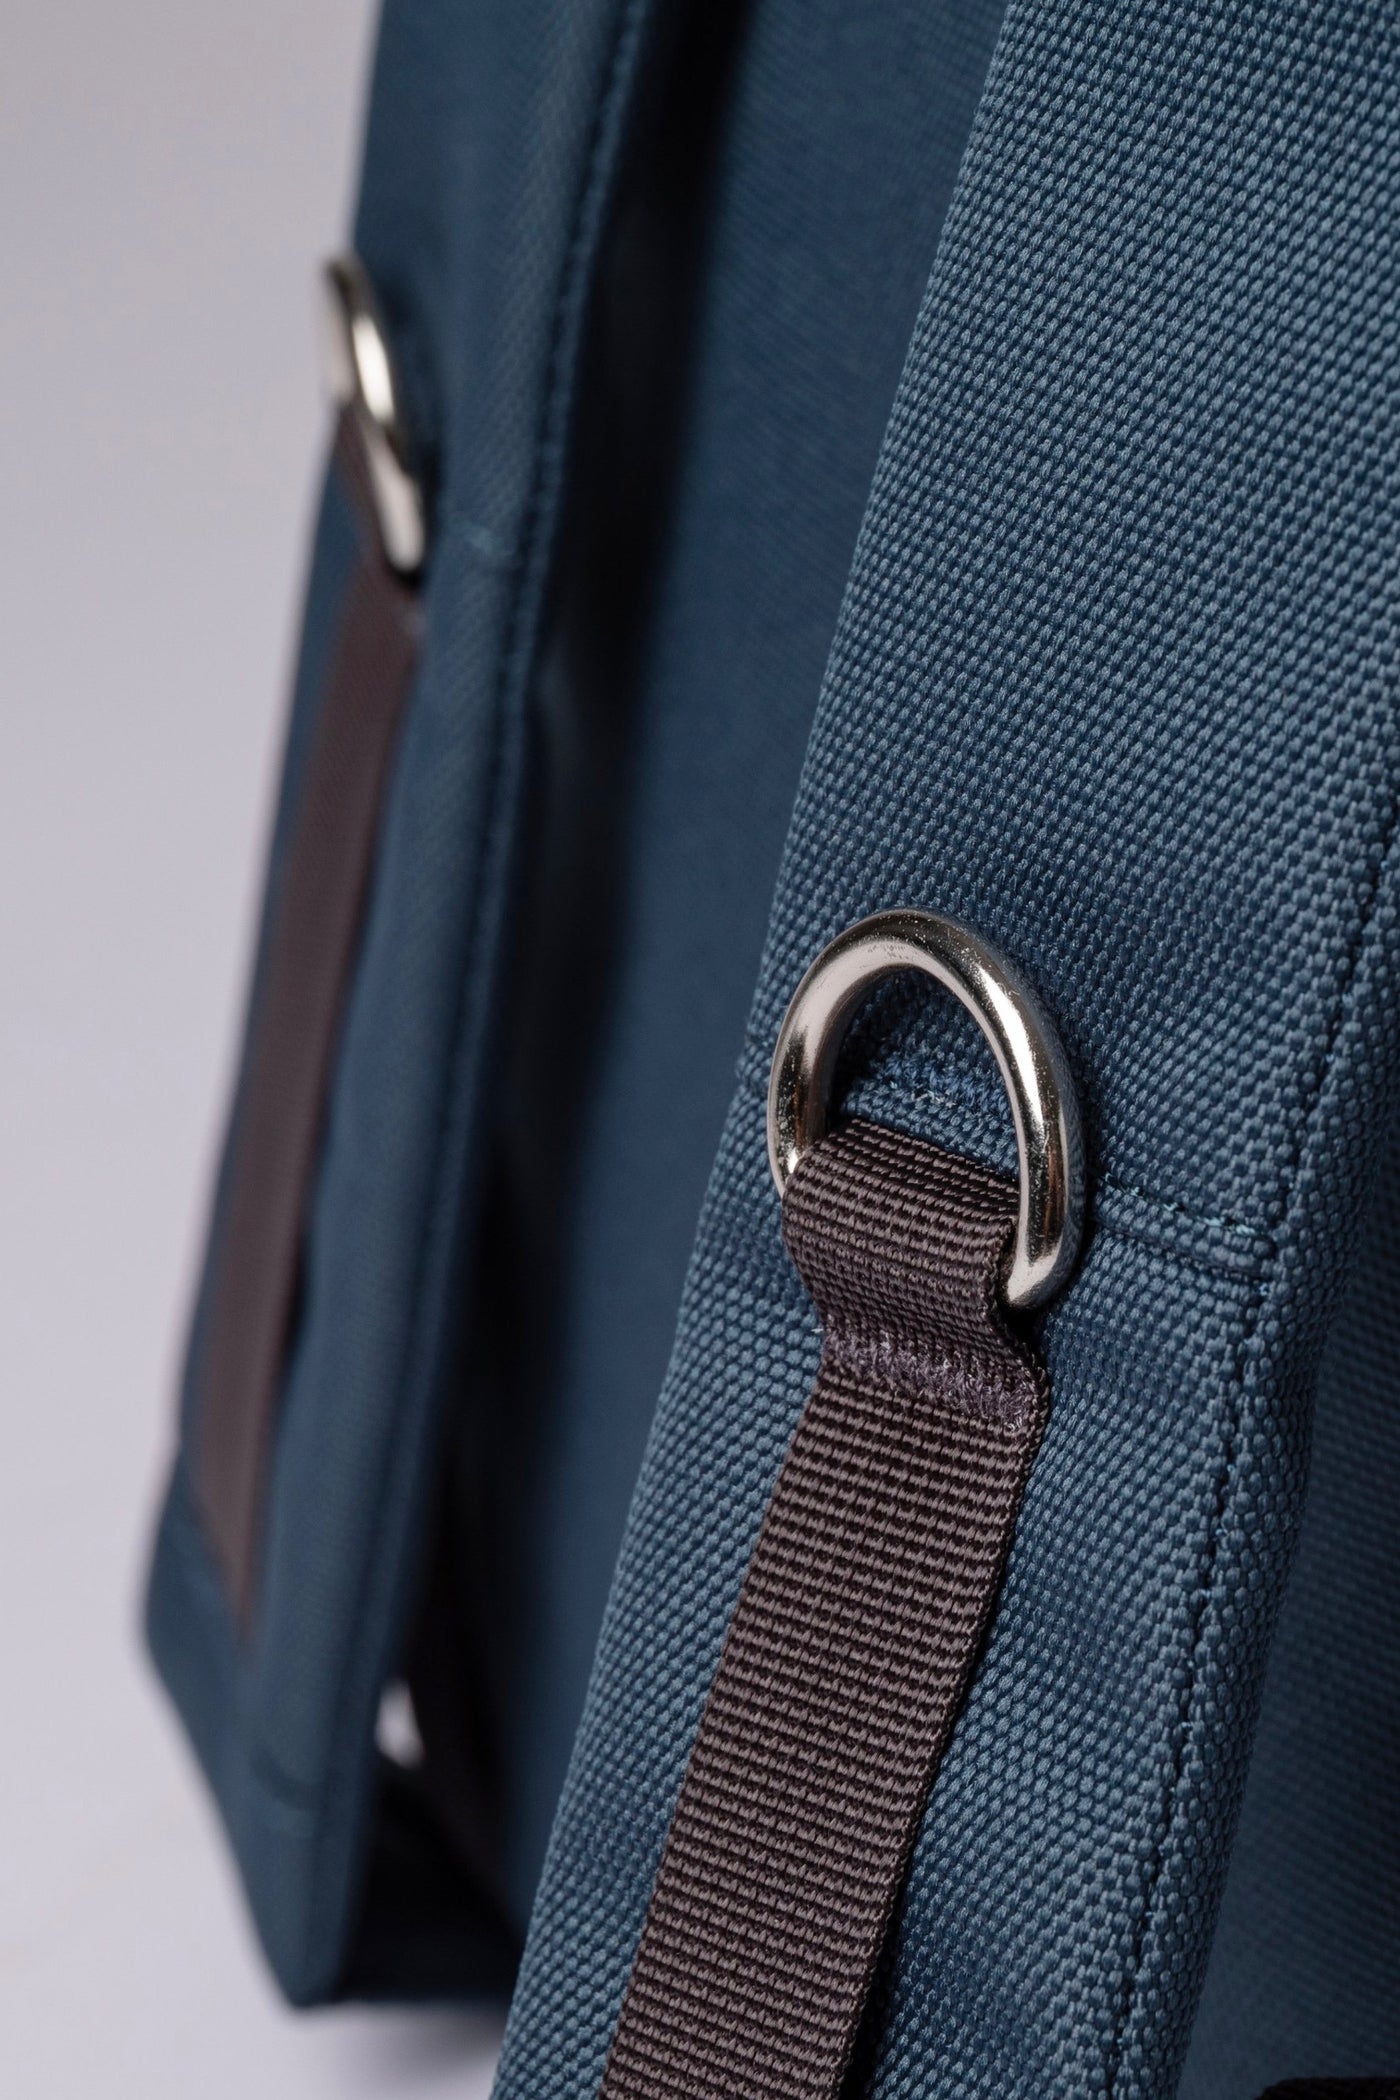 ILON Backpack steel blue